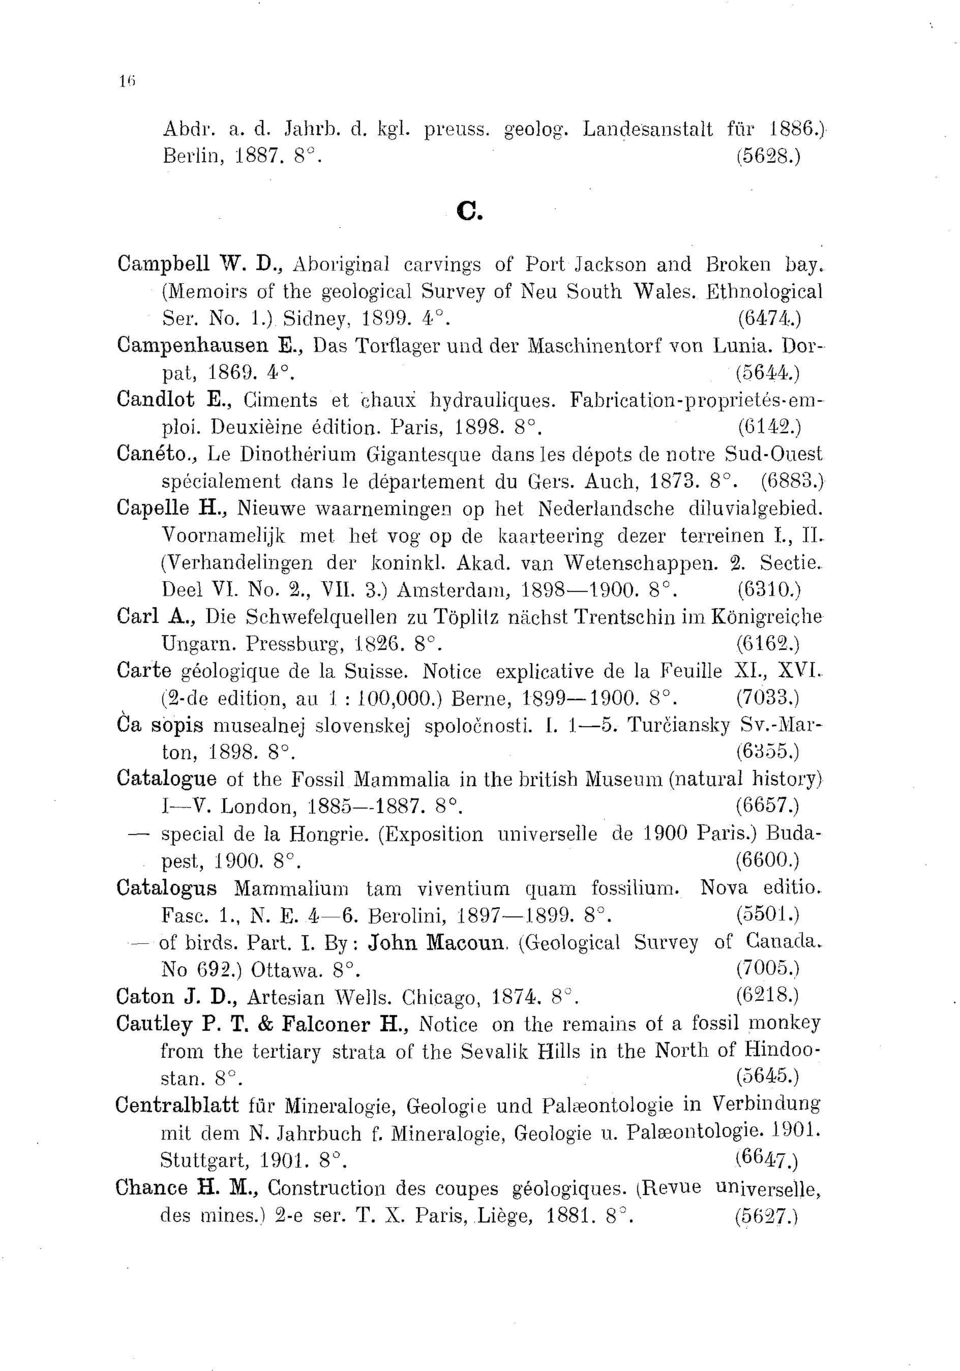 , Ciments et chaux hydrauliques. Fabrication-proprietés-emploi. Deuxième édition. Paris, 1898. 8. (6142 Canato.